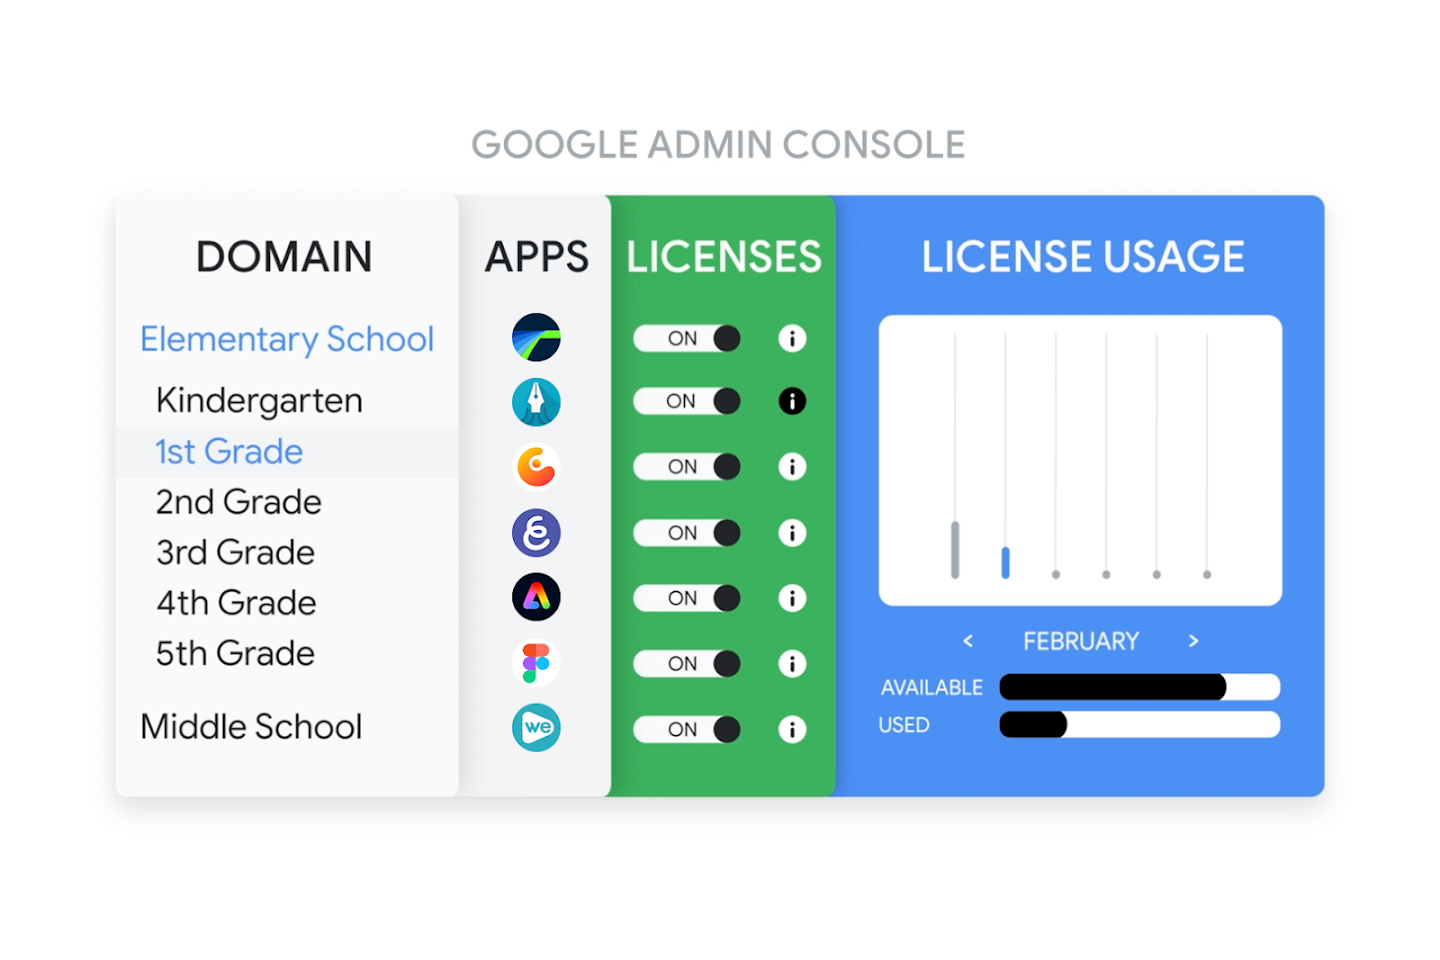 Google 管理コンソールでのアプリのライセンス管理を示した画像。アプリが生徒にプロビジョニングされている様子が表示されている